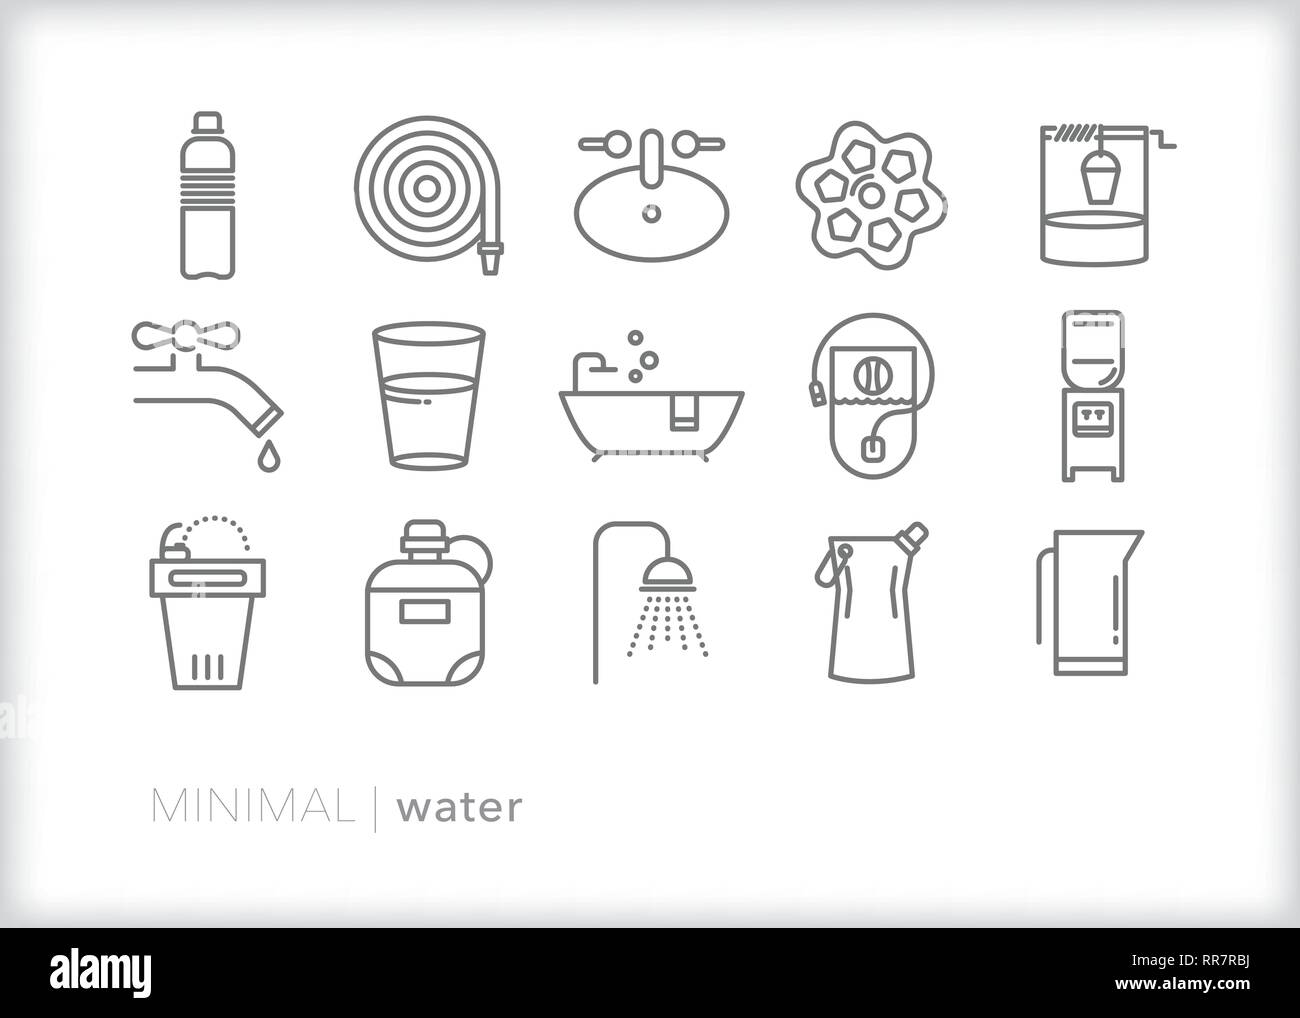 Satz von 15 Water line Symbole, einschließlich Möglichkeiten für den Zugriff auf, Sauber, Speichern und Abrufen von Wasser Stock Vektor